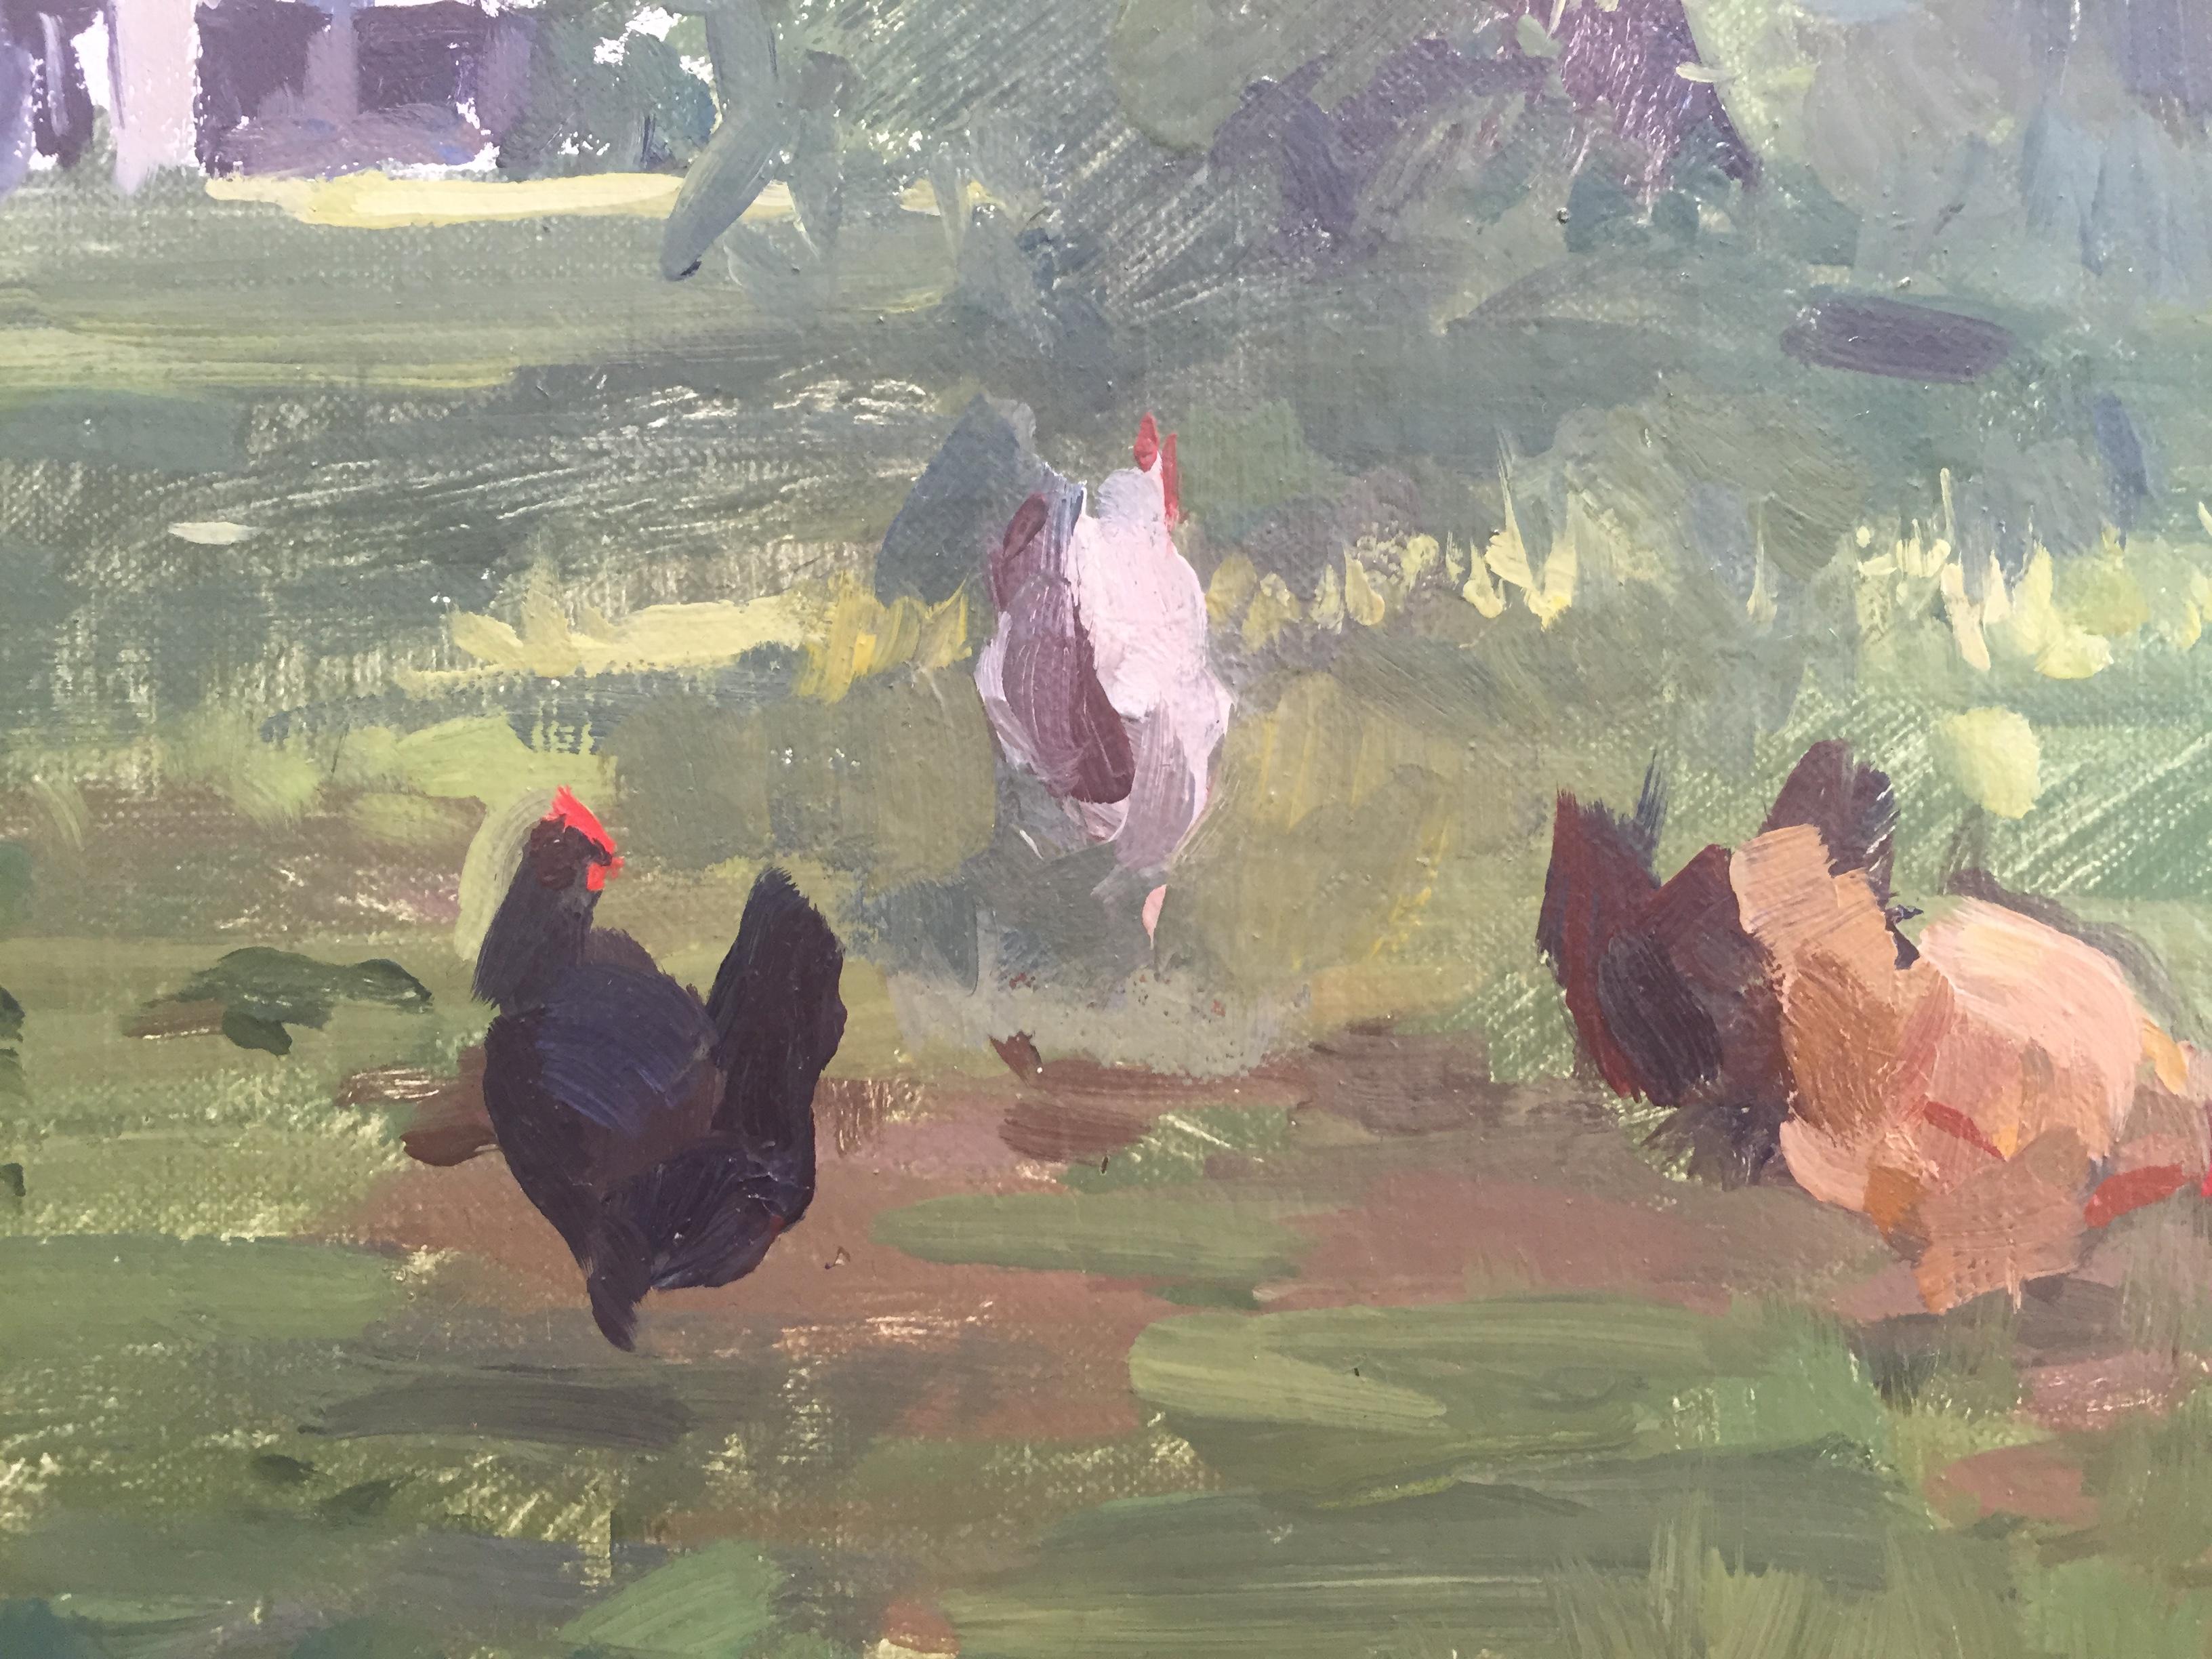 Eine Gruppe von Hühnern tummelt sich in einem grasbewachsenen Hof. 

Rahmenoptionen verfügbar. 

Marc Dalessio wurde 1972 in Los Angeles, Kalifornien, geboren. Schon in seinen ersten Lebensjahren war klar, dass seine Leidenschaft der Kunst galt.